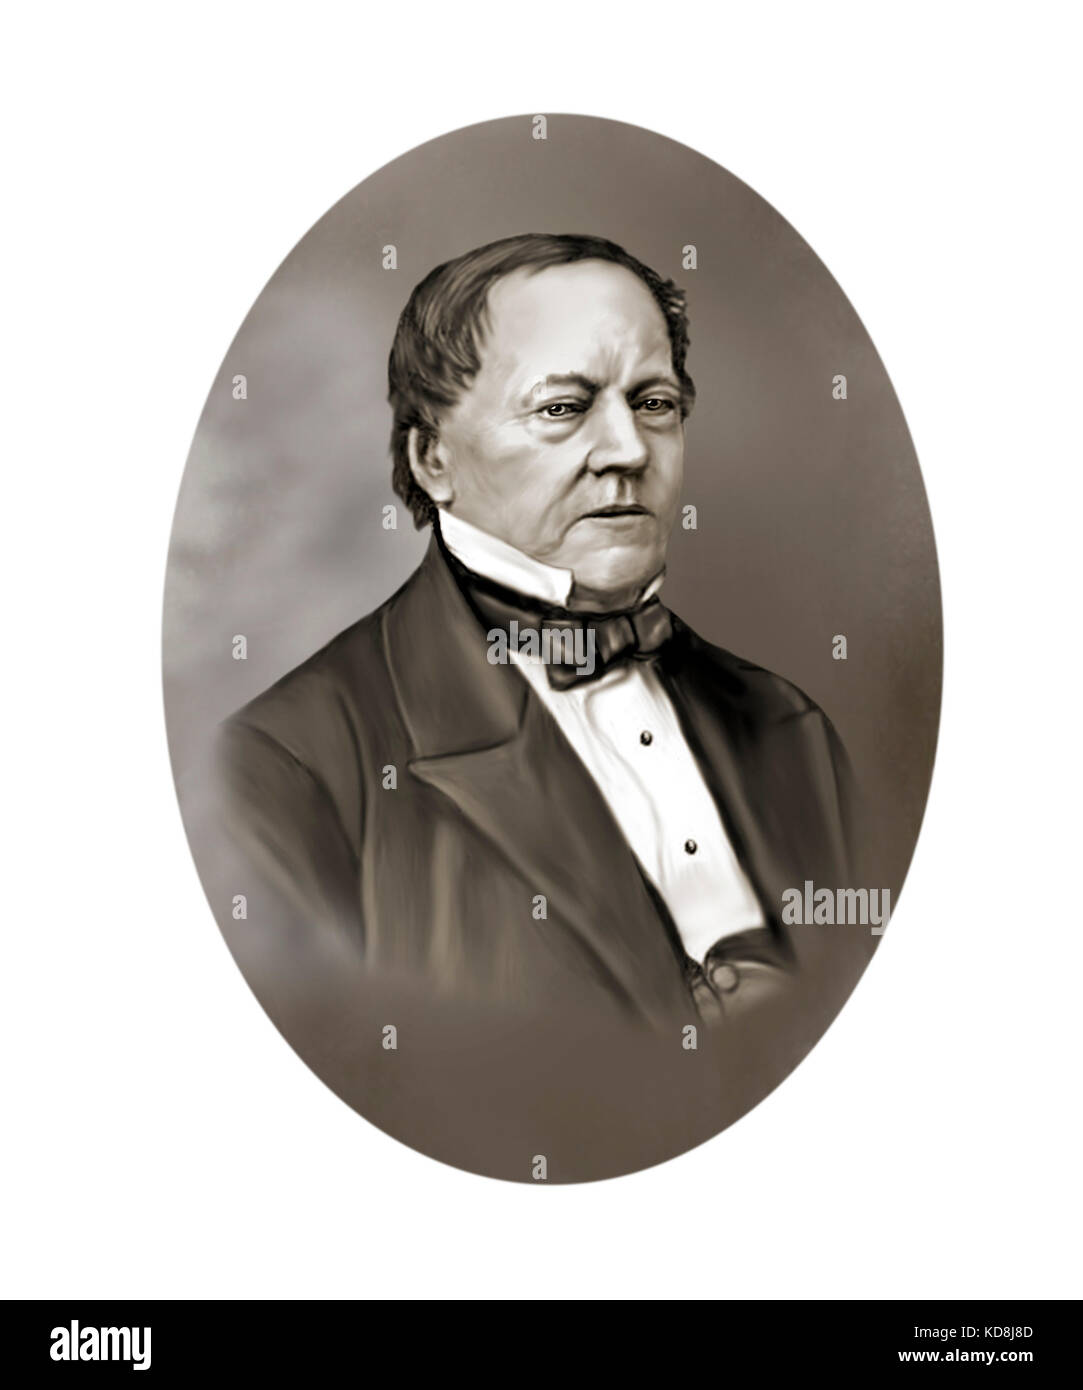 Par georg scheutz, 1785 - 1873, l'avocat, traducteur, inventeur, pionnier de la technologie de l'ordinateur Banque D'Images